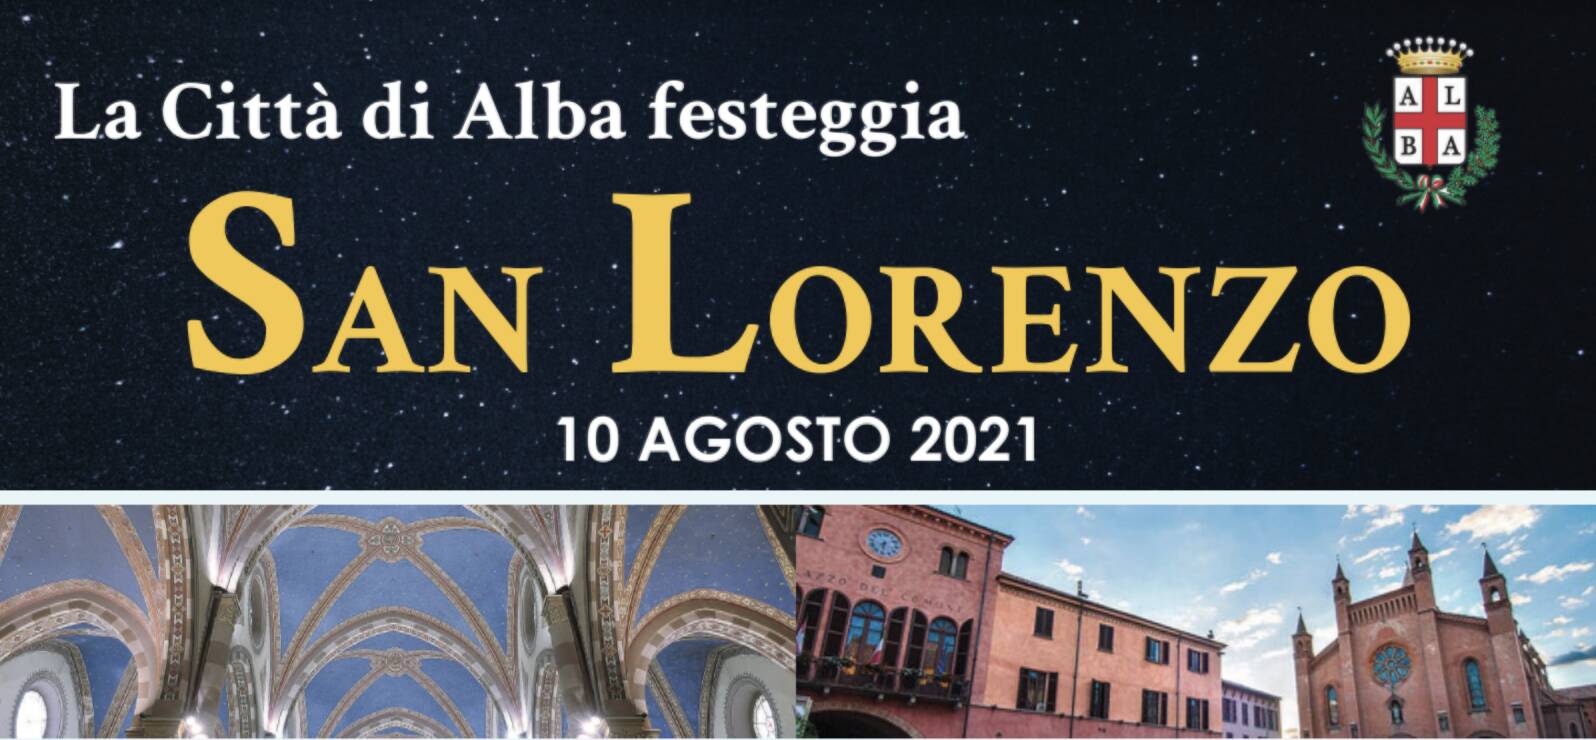 San Lorenzo, i festeggiamenti patronali di Alba il 10 agosto